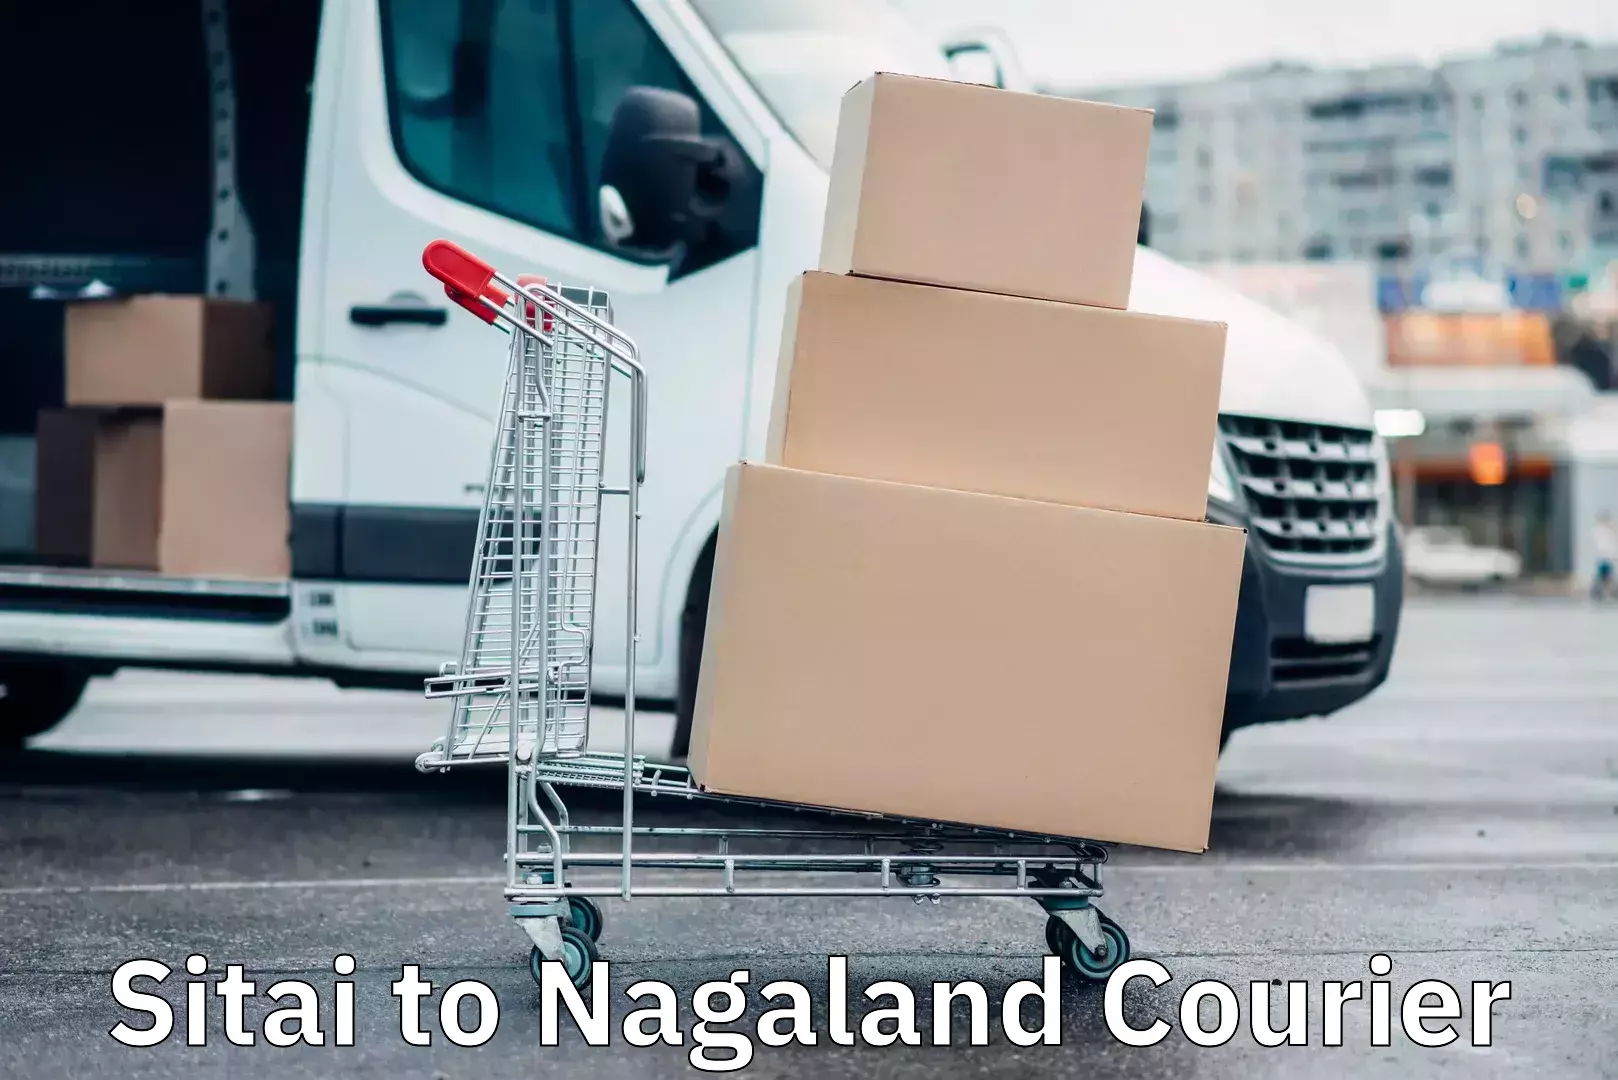 Global shipping networks Sitai to Nagaland